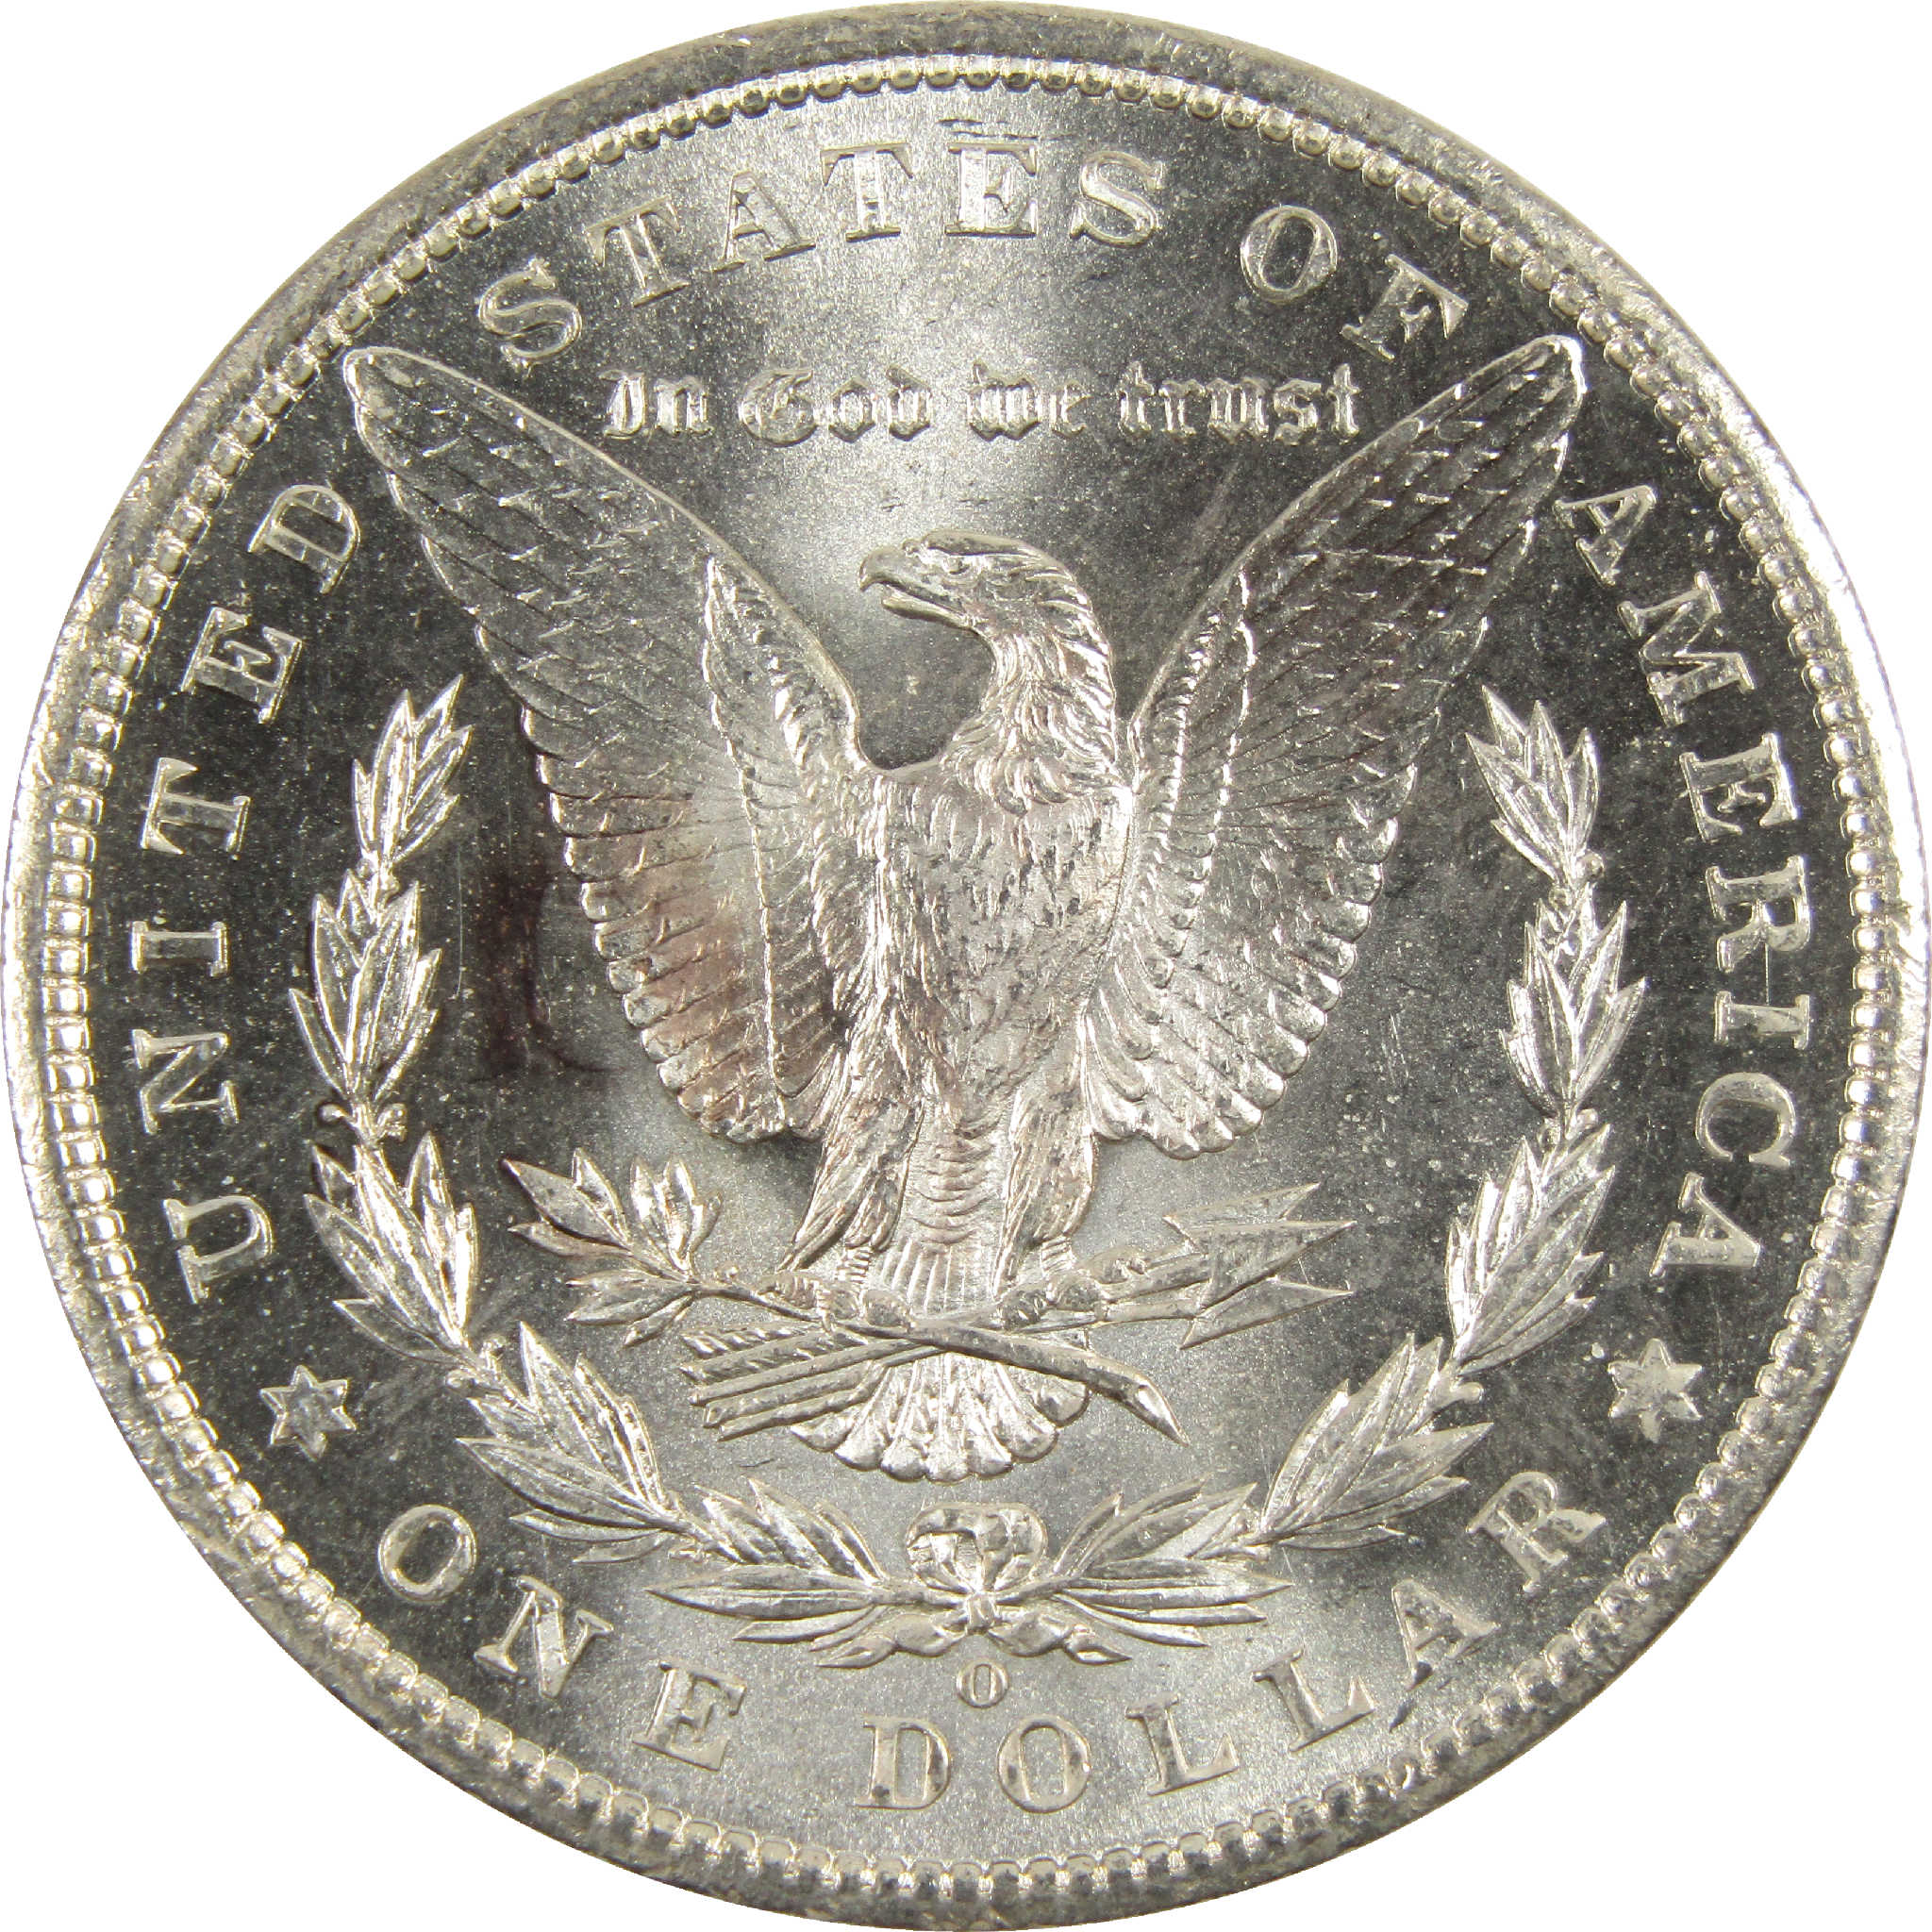 1900 O Morgan Dollar CH AU Choice About Uncirculated Silver $1 Coin - Morgan coin - Morgan silver dollar - Morgan silver dollar for sale - Profile Coins &amp; Collectibles